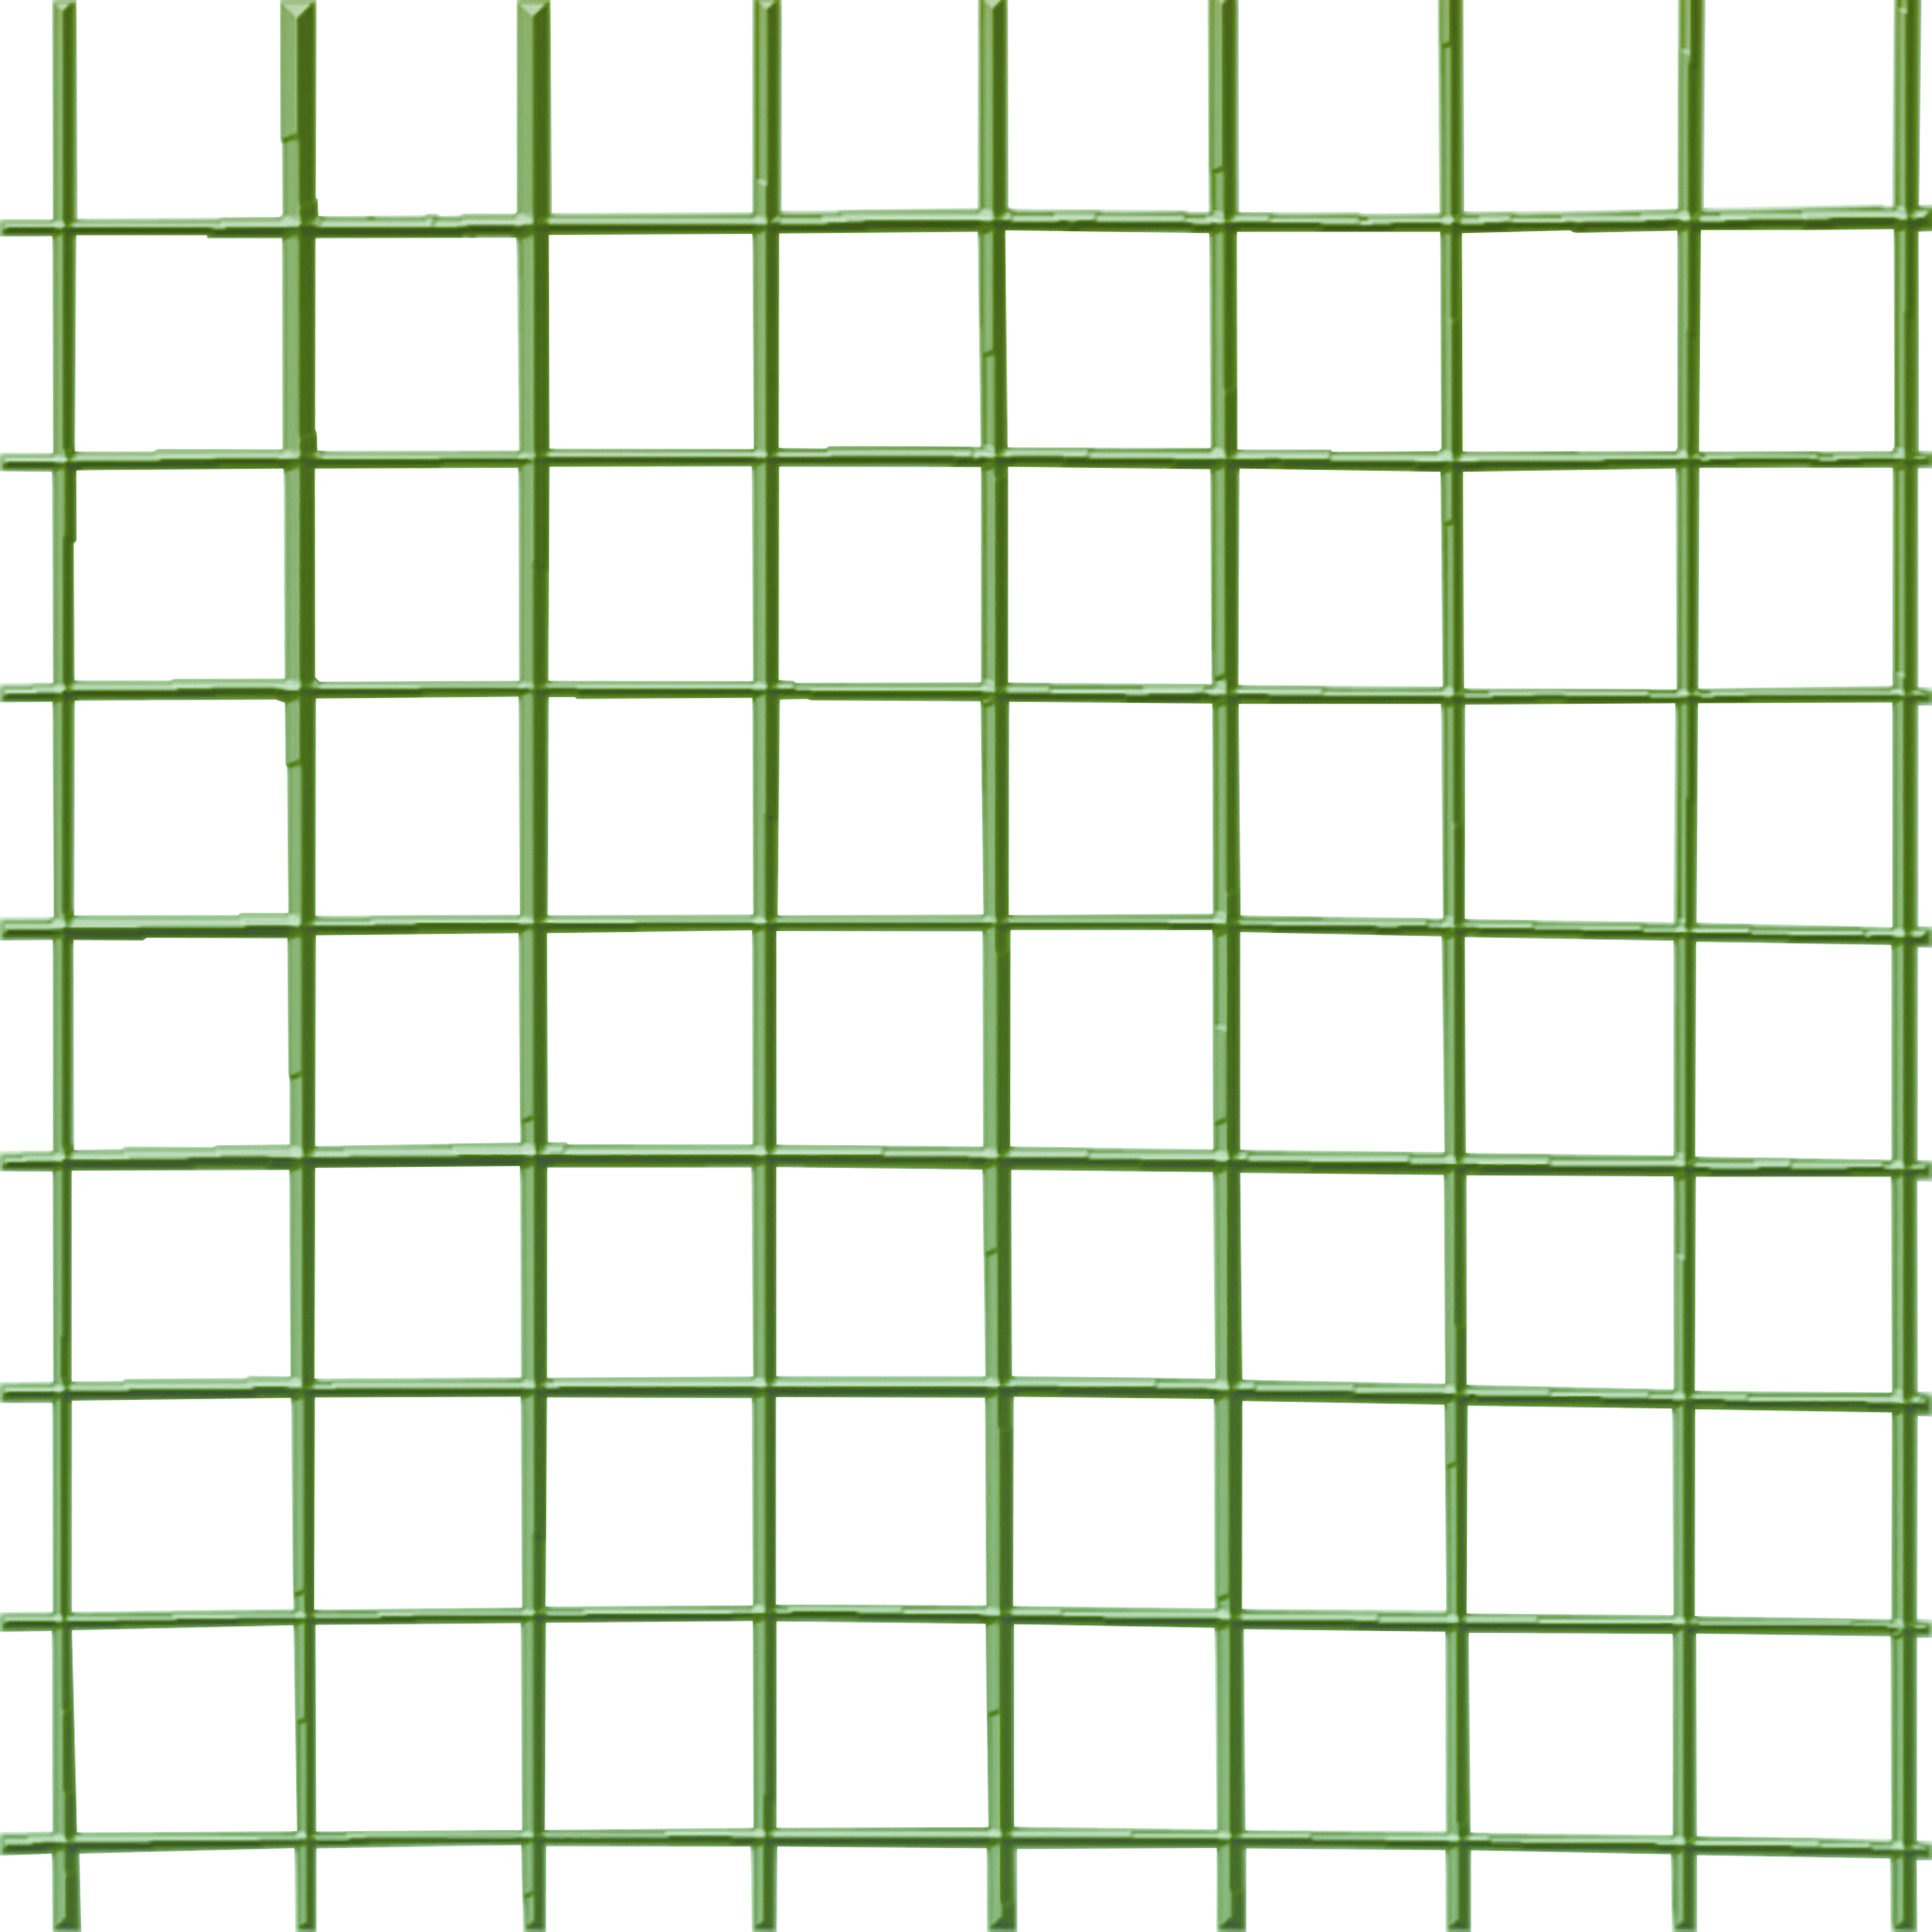 Fensanet Allox Plast Grönt 19x19mm 1x5m